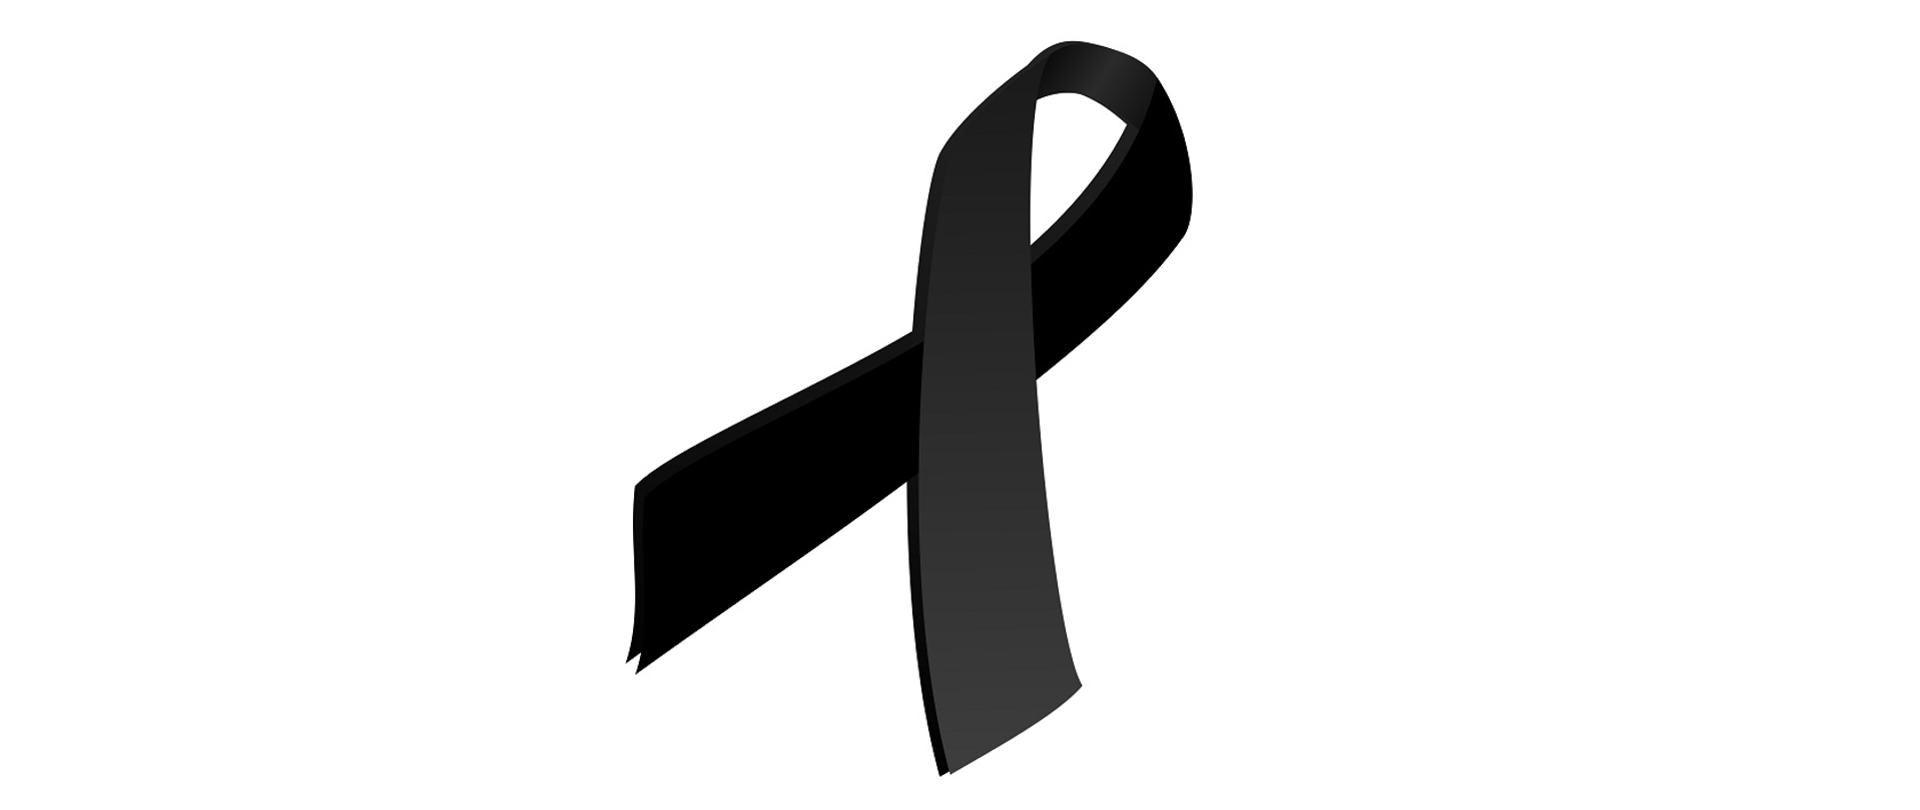 Zdjęcie przedstawia czarną wstążkę, symbol oznaczający żałobę.